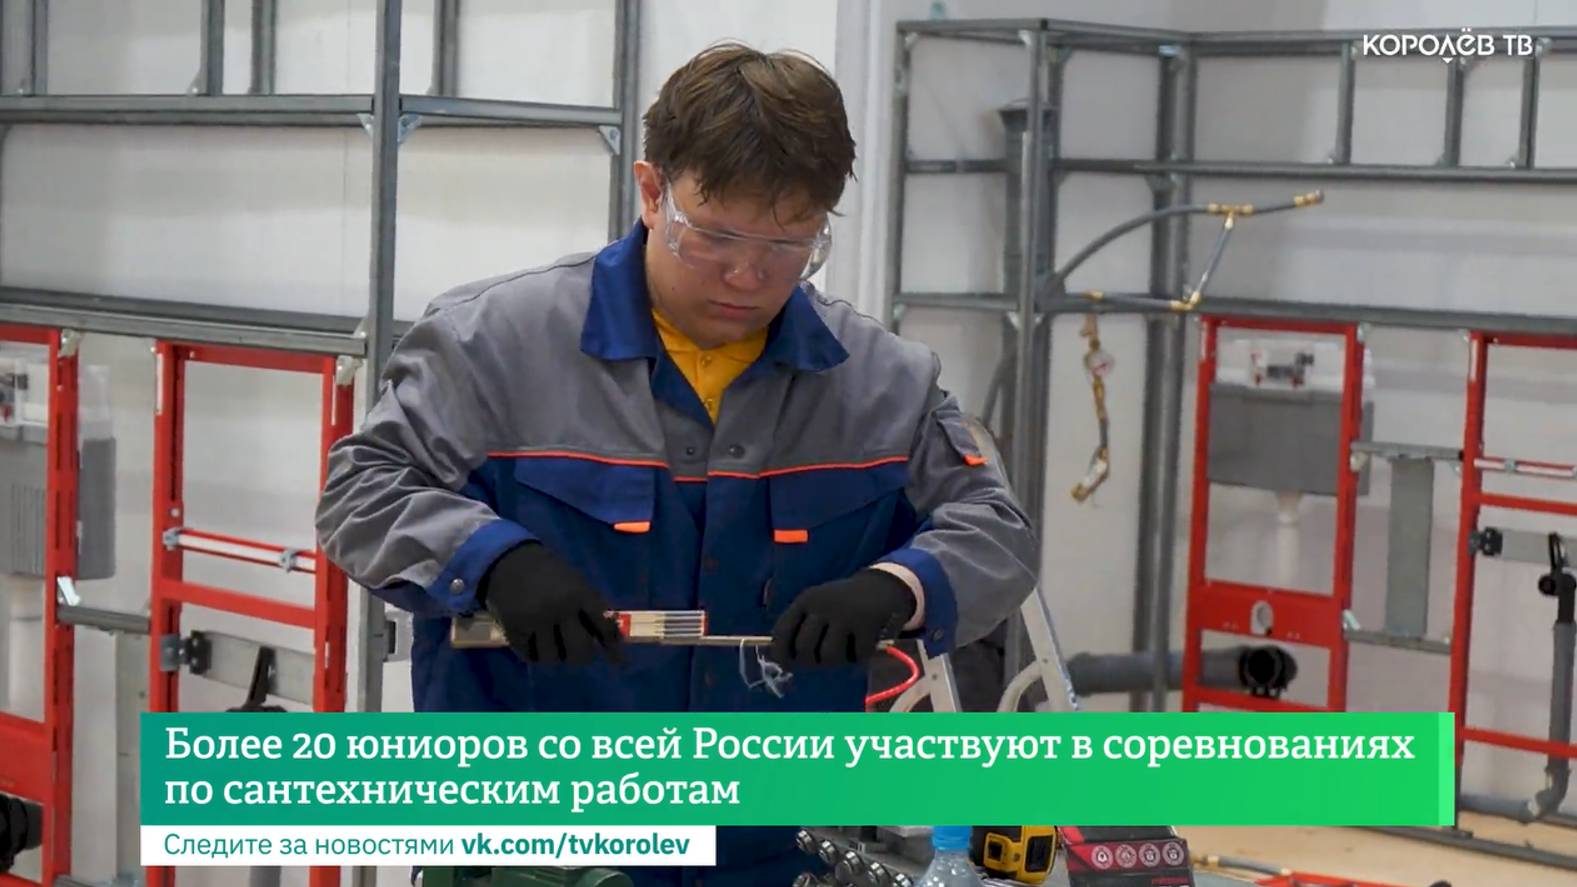 Более 20 юниоров со всей России участвуют в соревнованиях по сантехническим работам